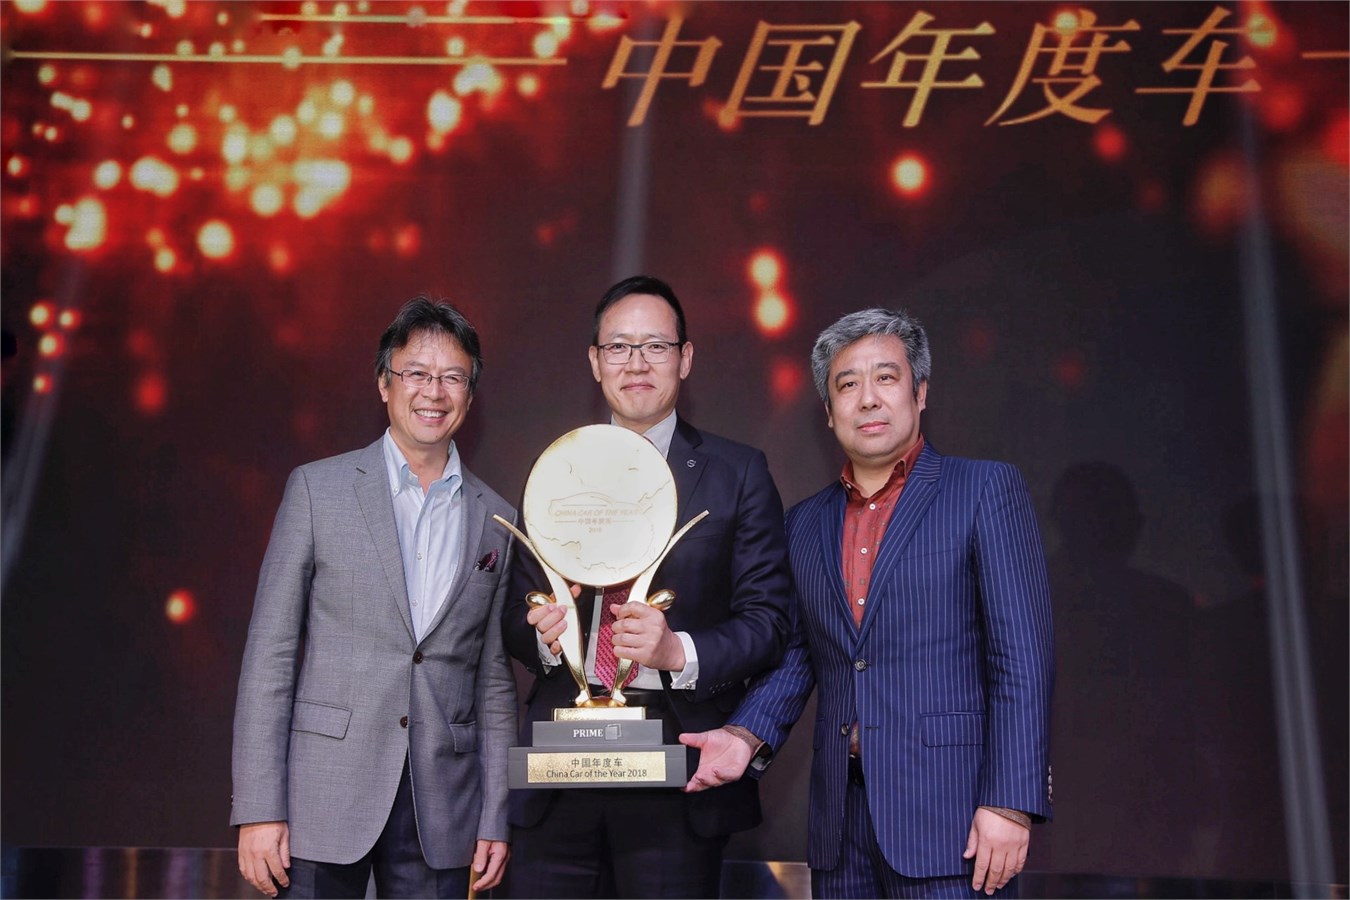 沃尔沃汽车集团全球高级副总裁、亚太区总裁兼CEO袁小林先生亲自领取“中国年度车”奖项